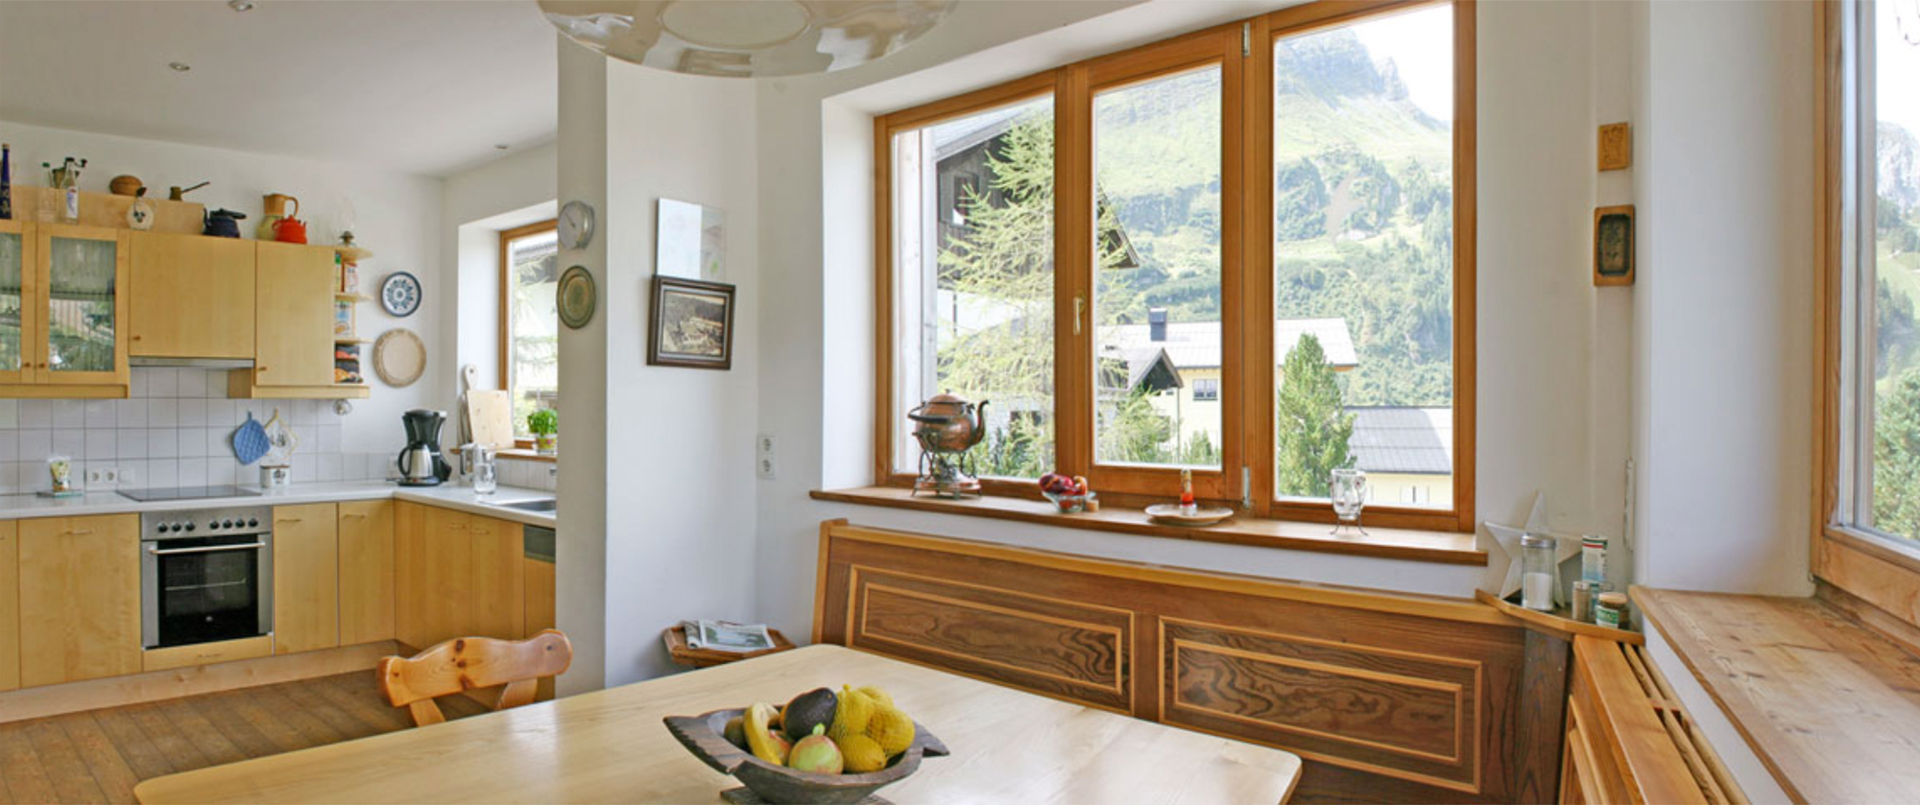 Vakantiehuis Meilinger in Obertauern – keuken en eetkamer van het appartement op de begane grond